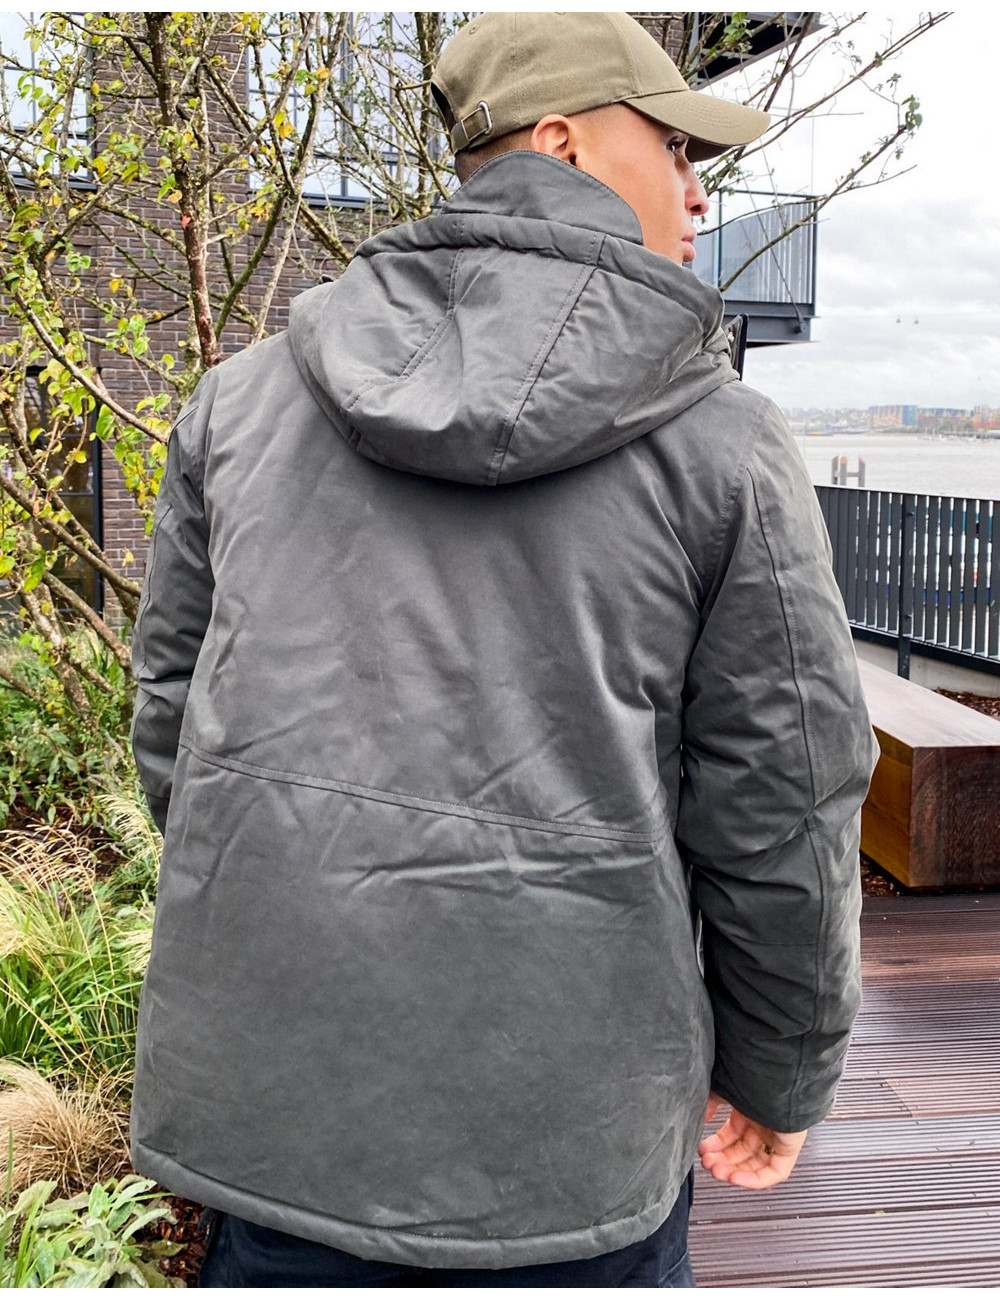 Fat Moose sailor hooded jacket